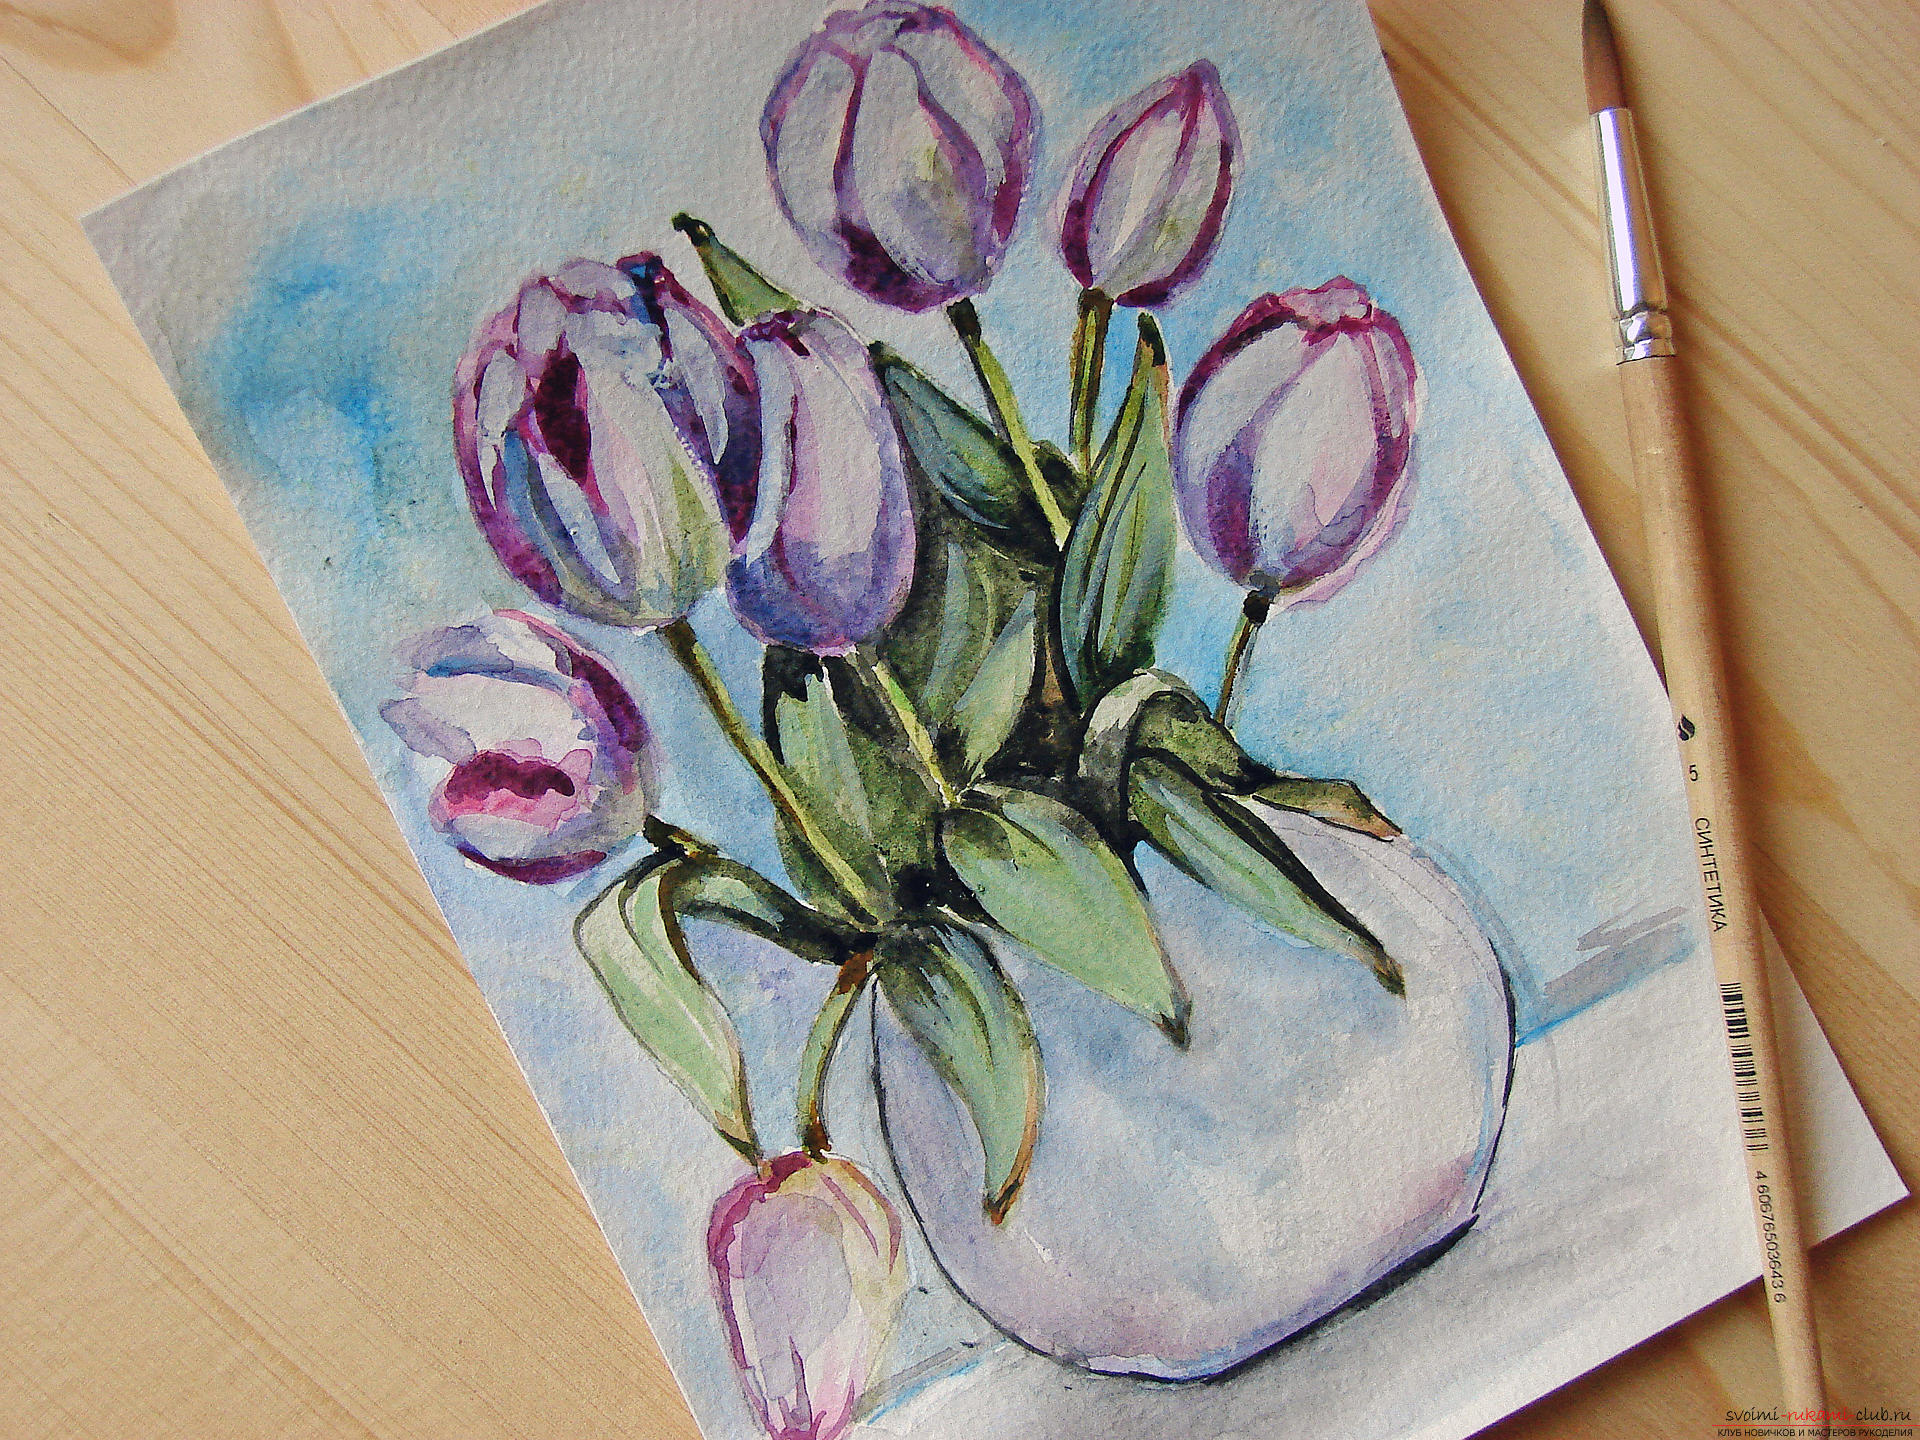 Мастер-класс по рисованию с фото научит как нарисовать цветы, подробно описав как рисуются тюльпаны поэтапно.. Фото №30